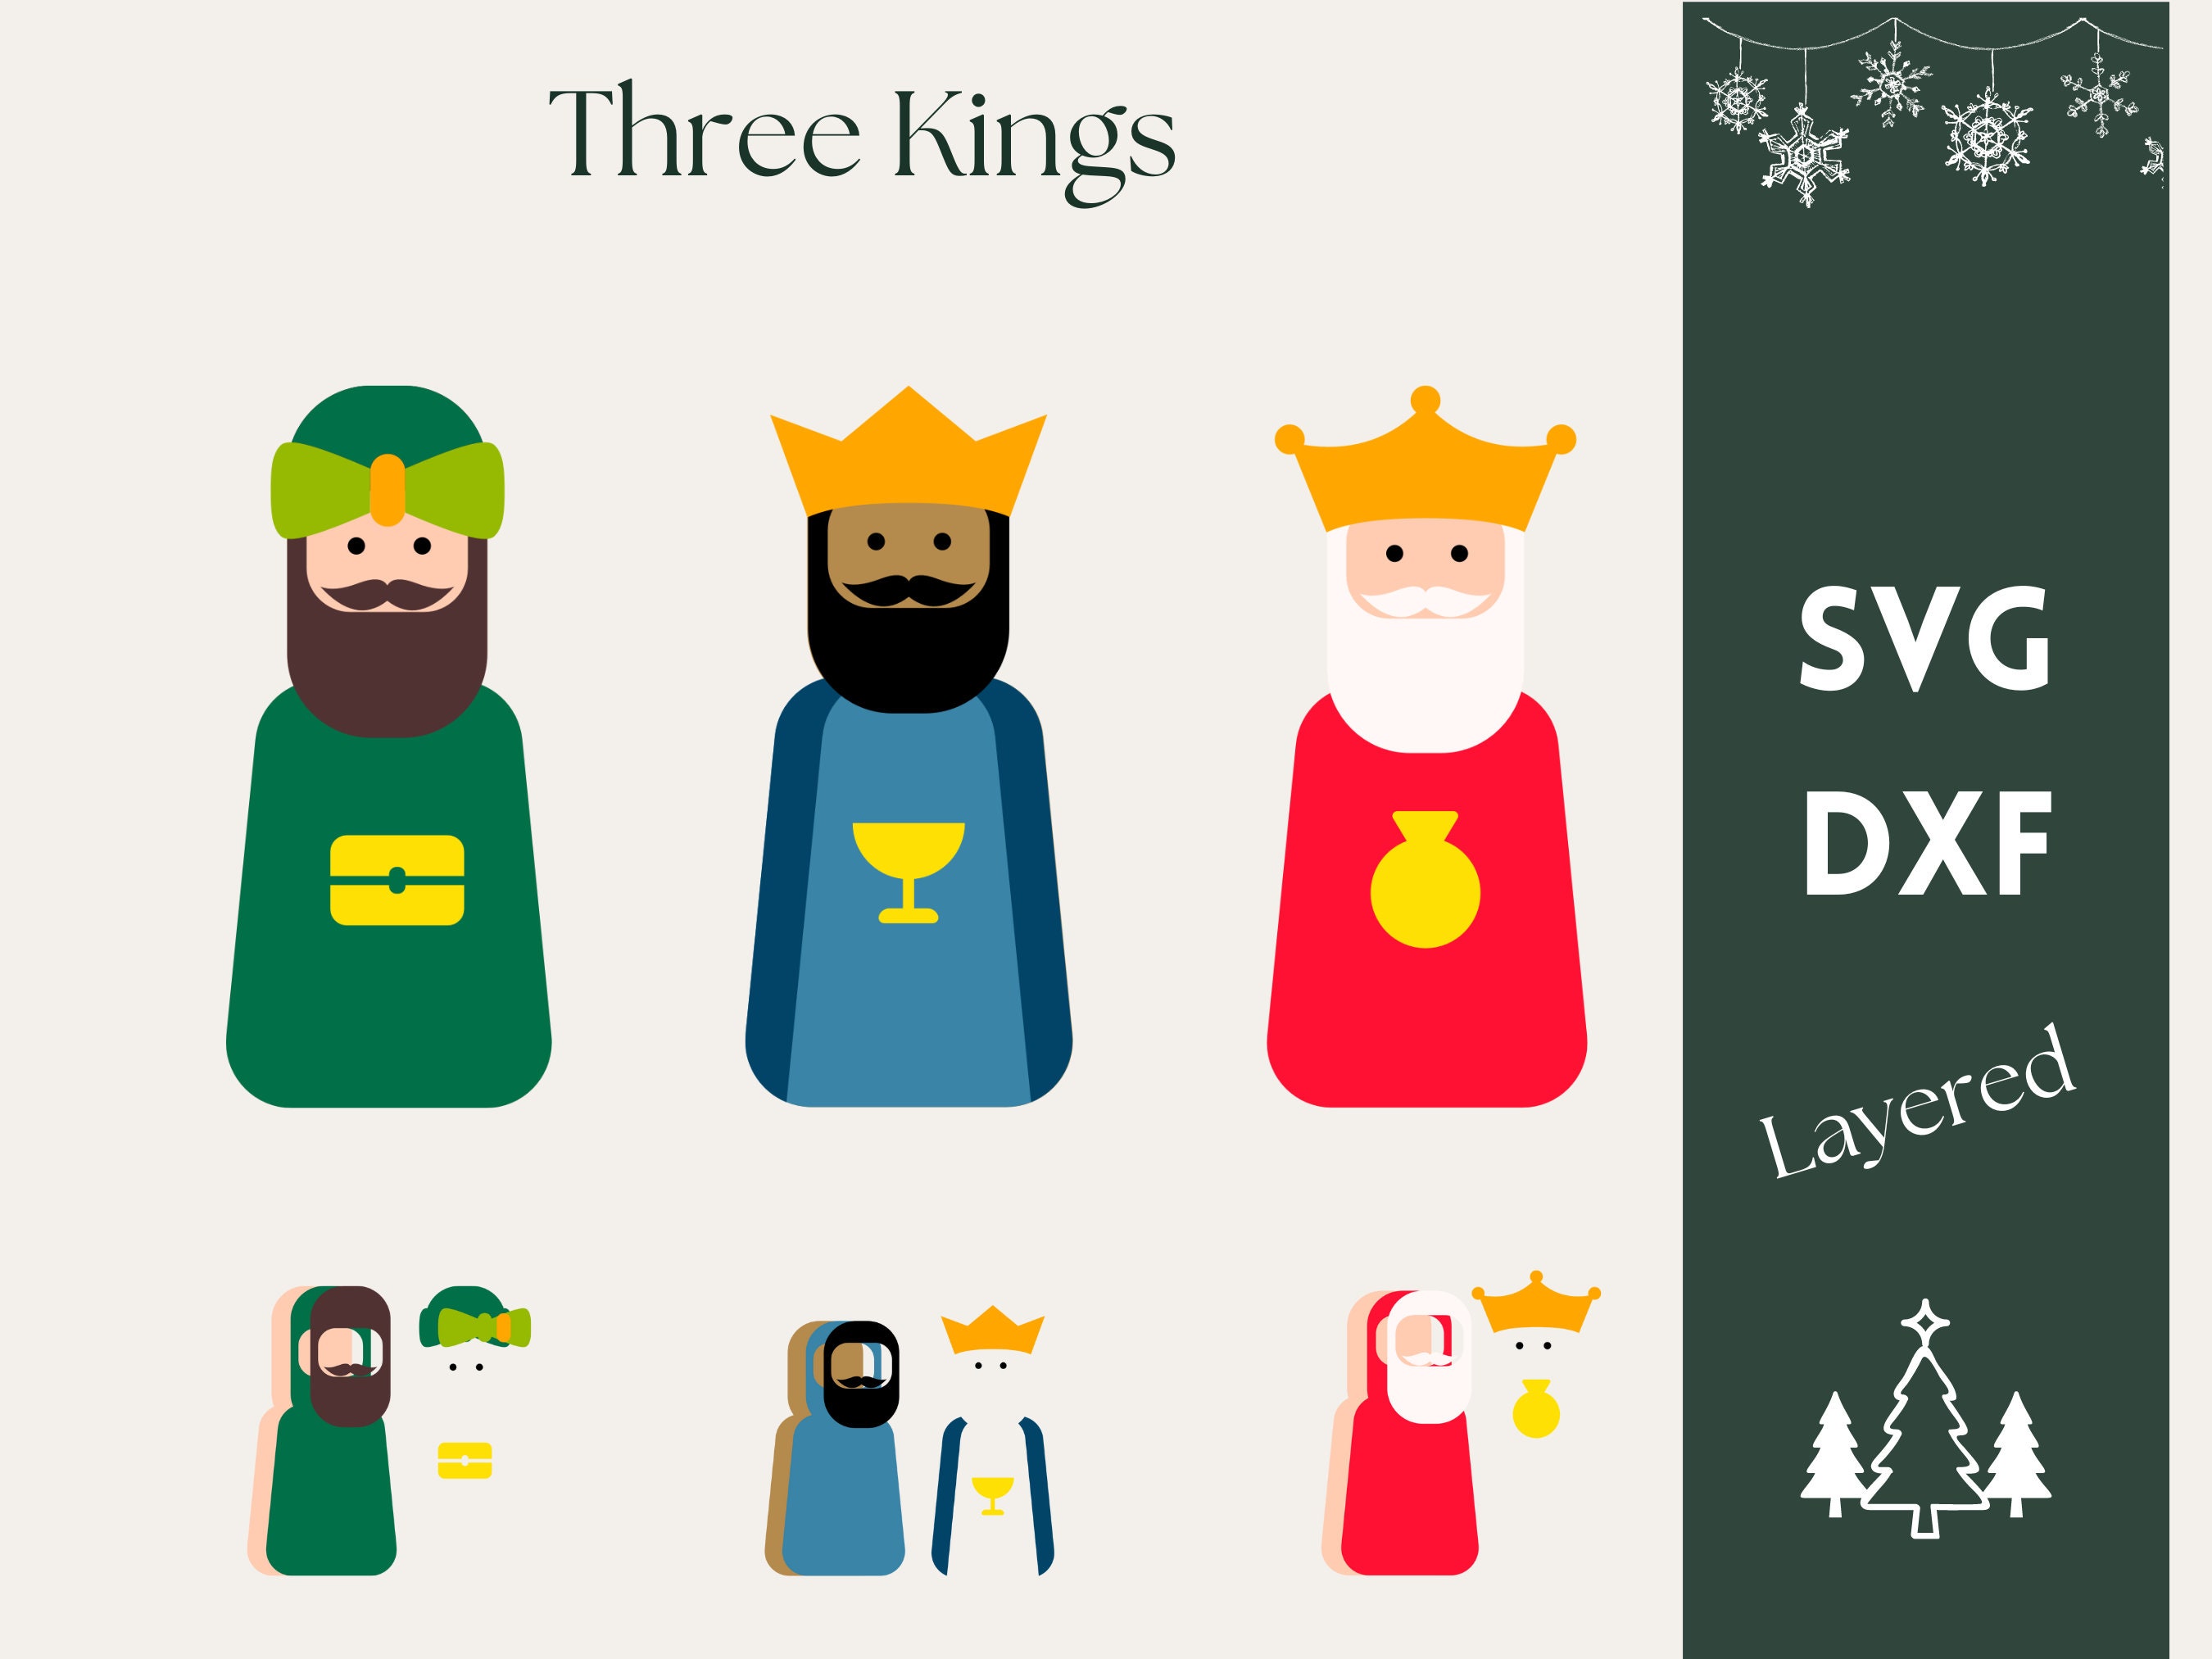 Rosca De Reyes, Dia De Los Reyes Magos, Rosca Svg, Cafecito, Three Kings  Cake, Three Wise Men Svg, Nativity Svg, Mexican Svg, SVG DXF PNG 